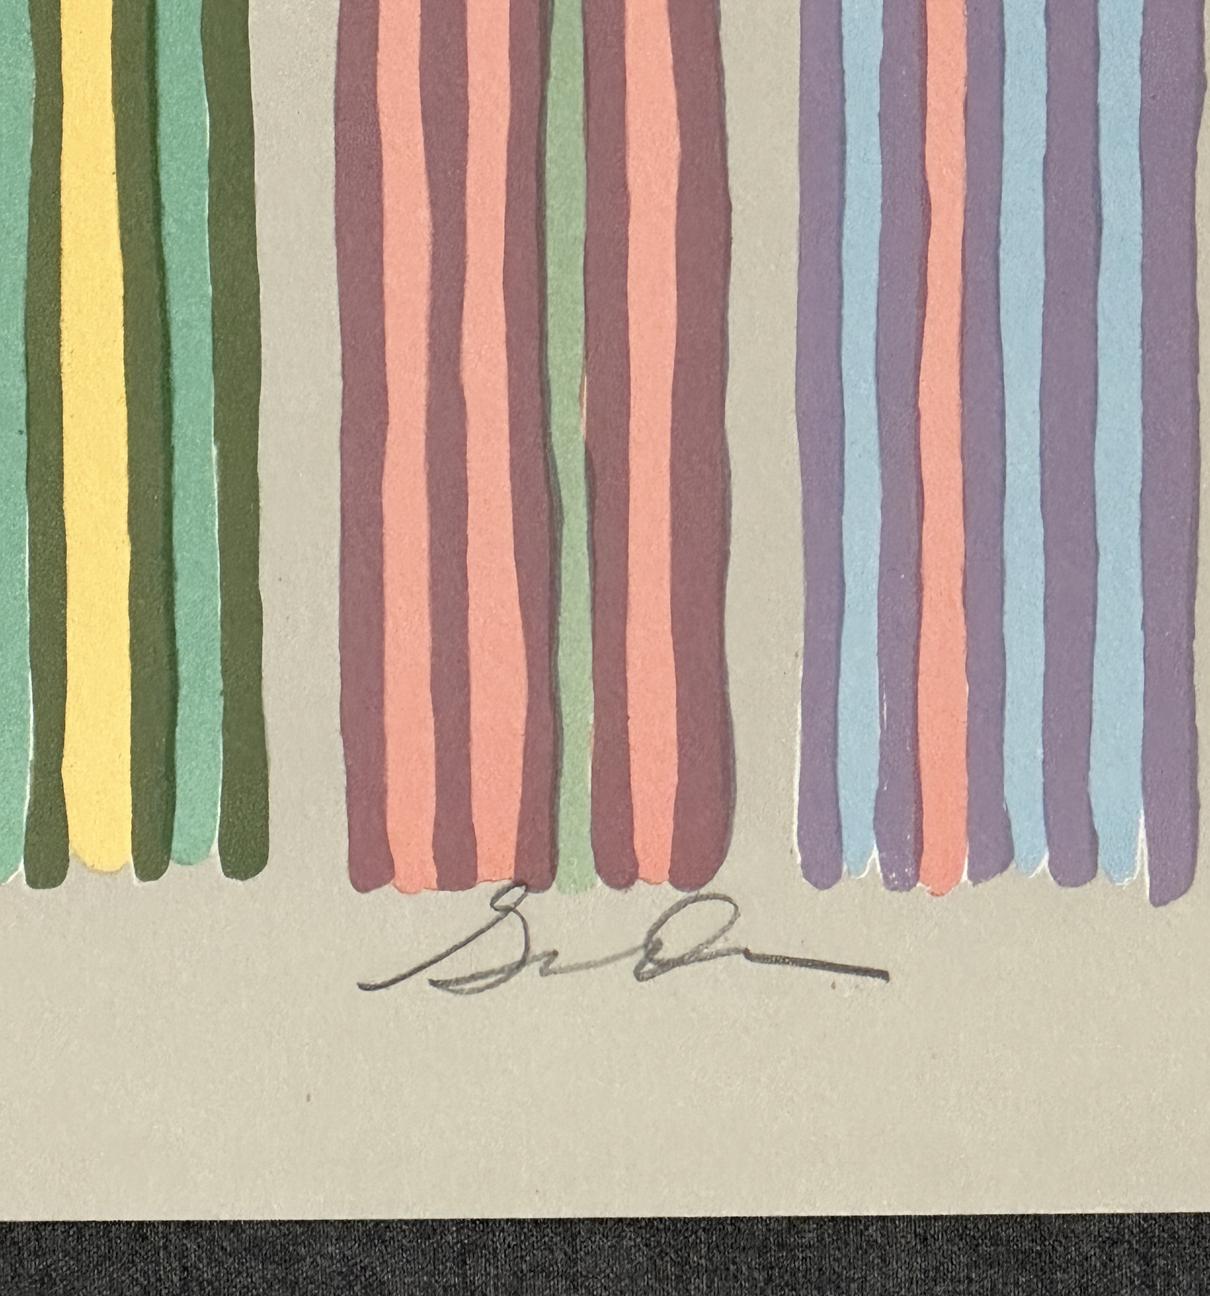 Gene Davis
Rideau royal - 1980
Impression - Sérigraphie, sur papier d'archives Arches   30'' x 22'' pouces
Edition : signée au crayon et marquée 180/250

Non encadré 

Connu pour ses peintures à rayures éblouissantes et immédiatement